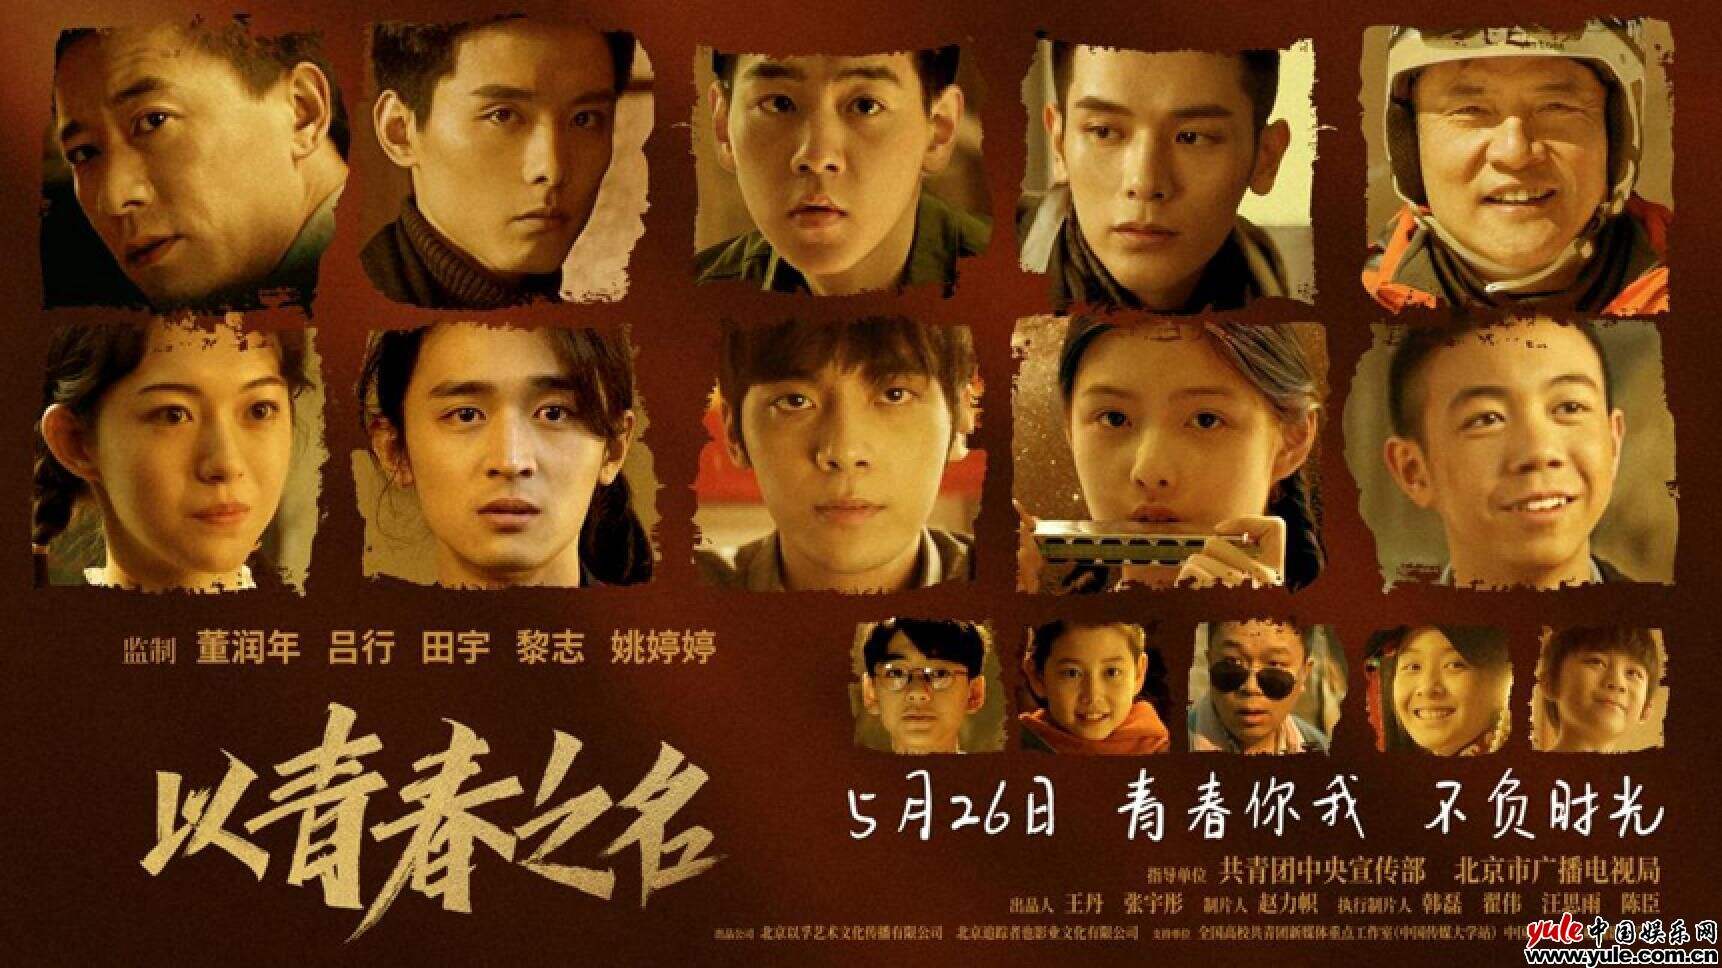 礼赞百年征途点赞中国青春 网络电影《以青春之名》今日全网上线！